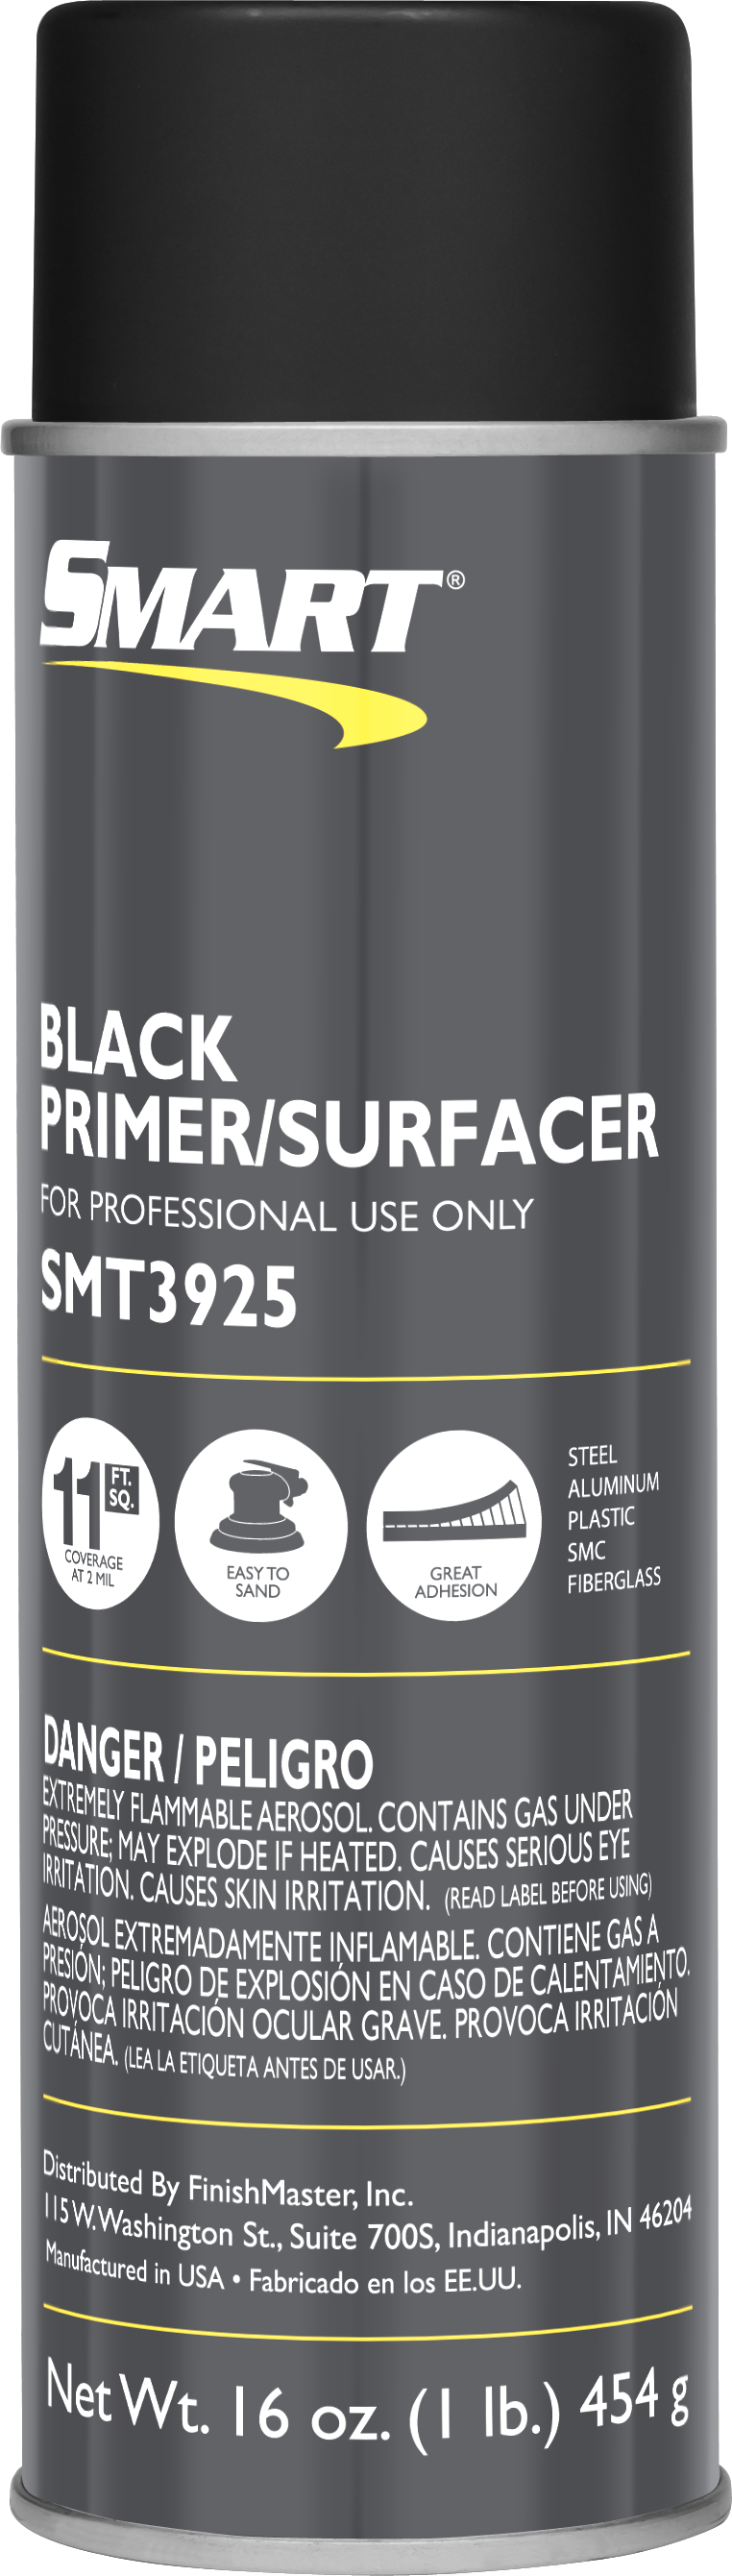 SMART Primer Surfacer Black